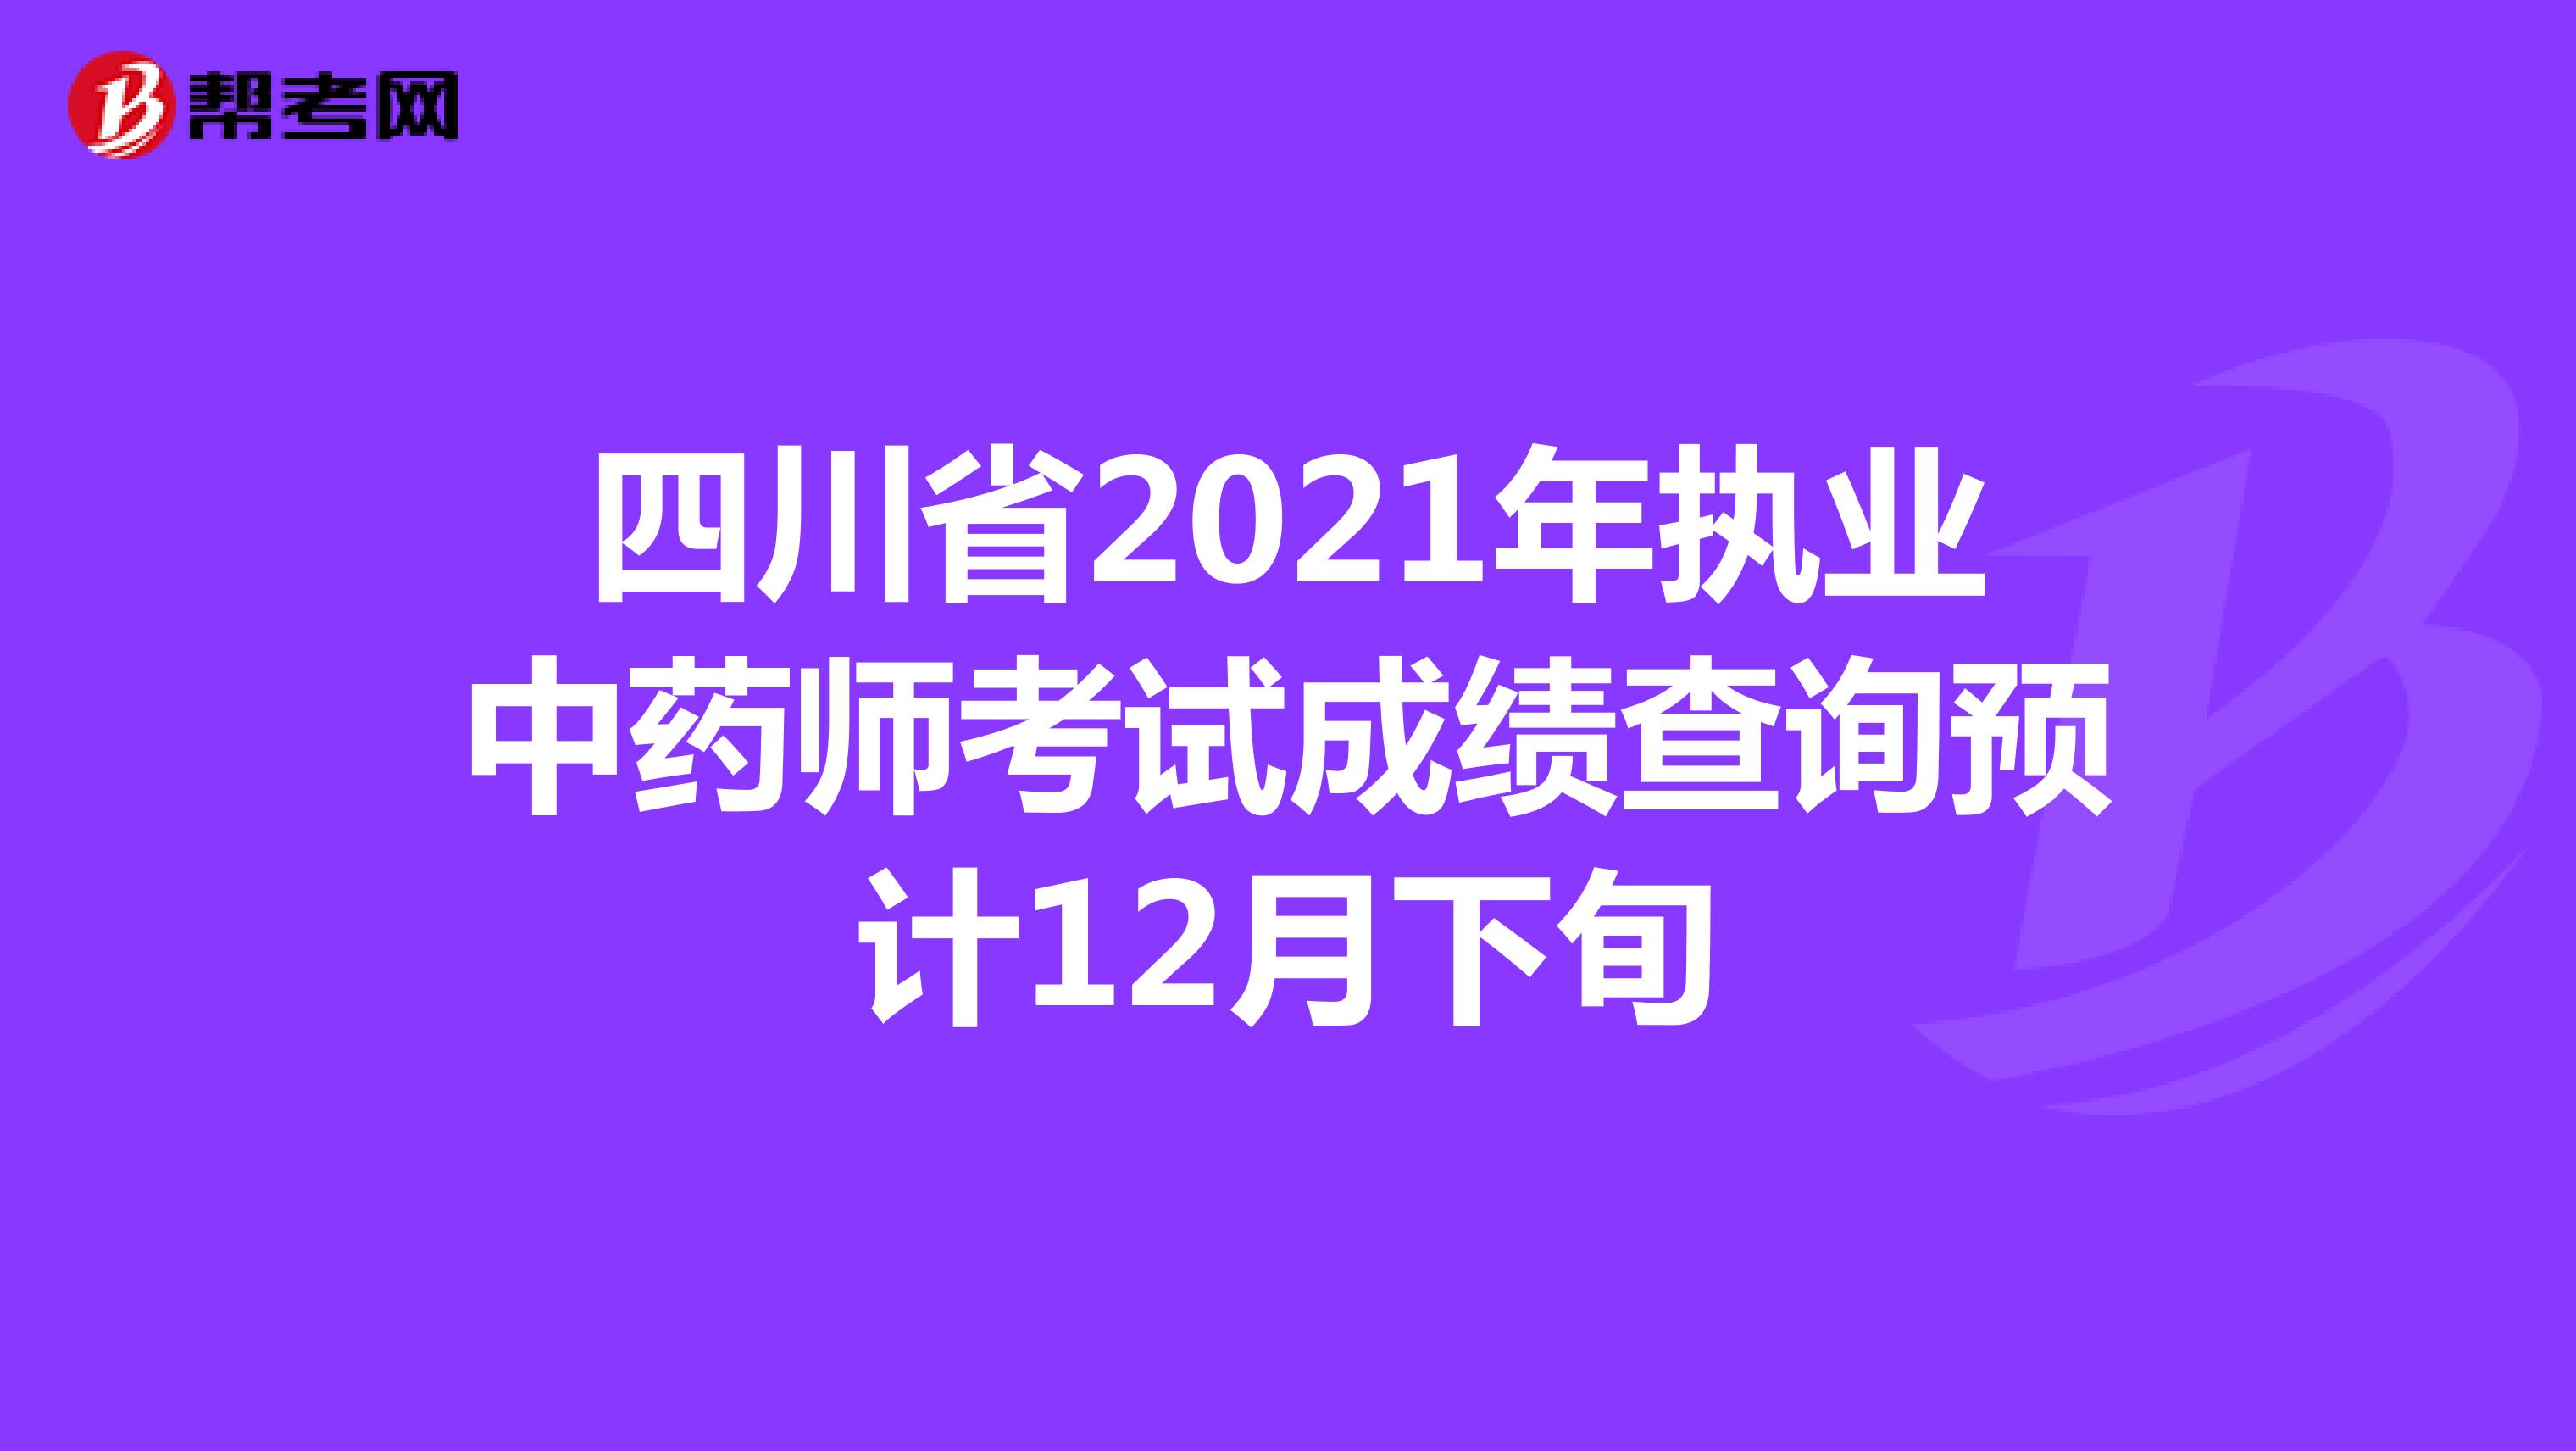 四川省2021年执业中药师考试成绩查询预计12月下旬